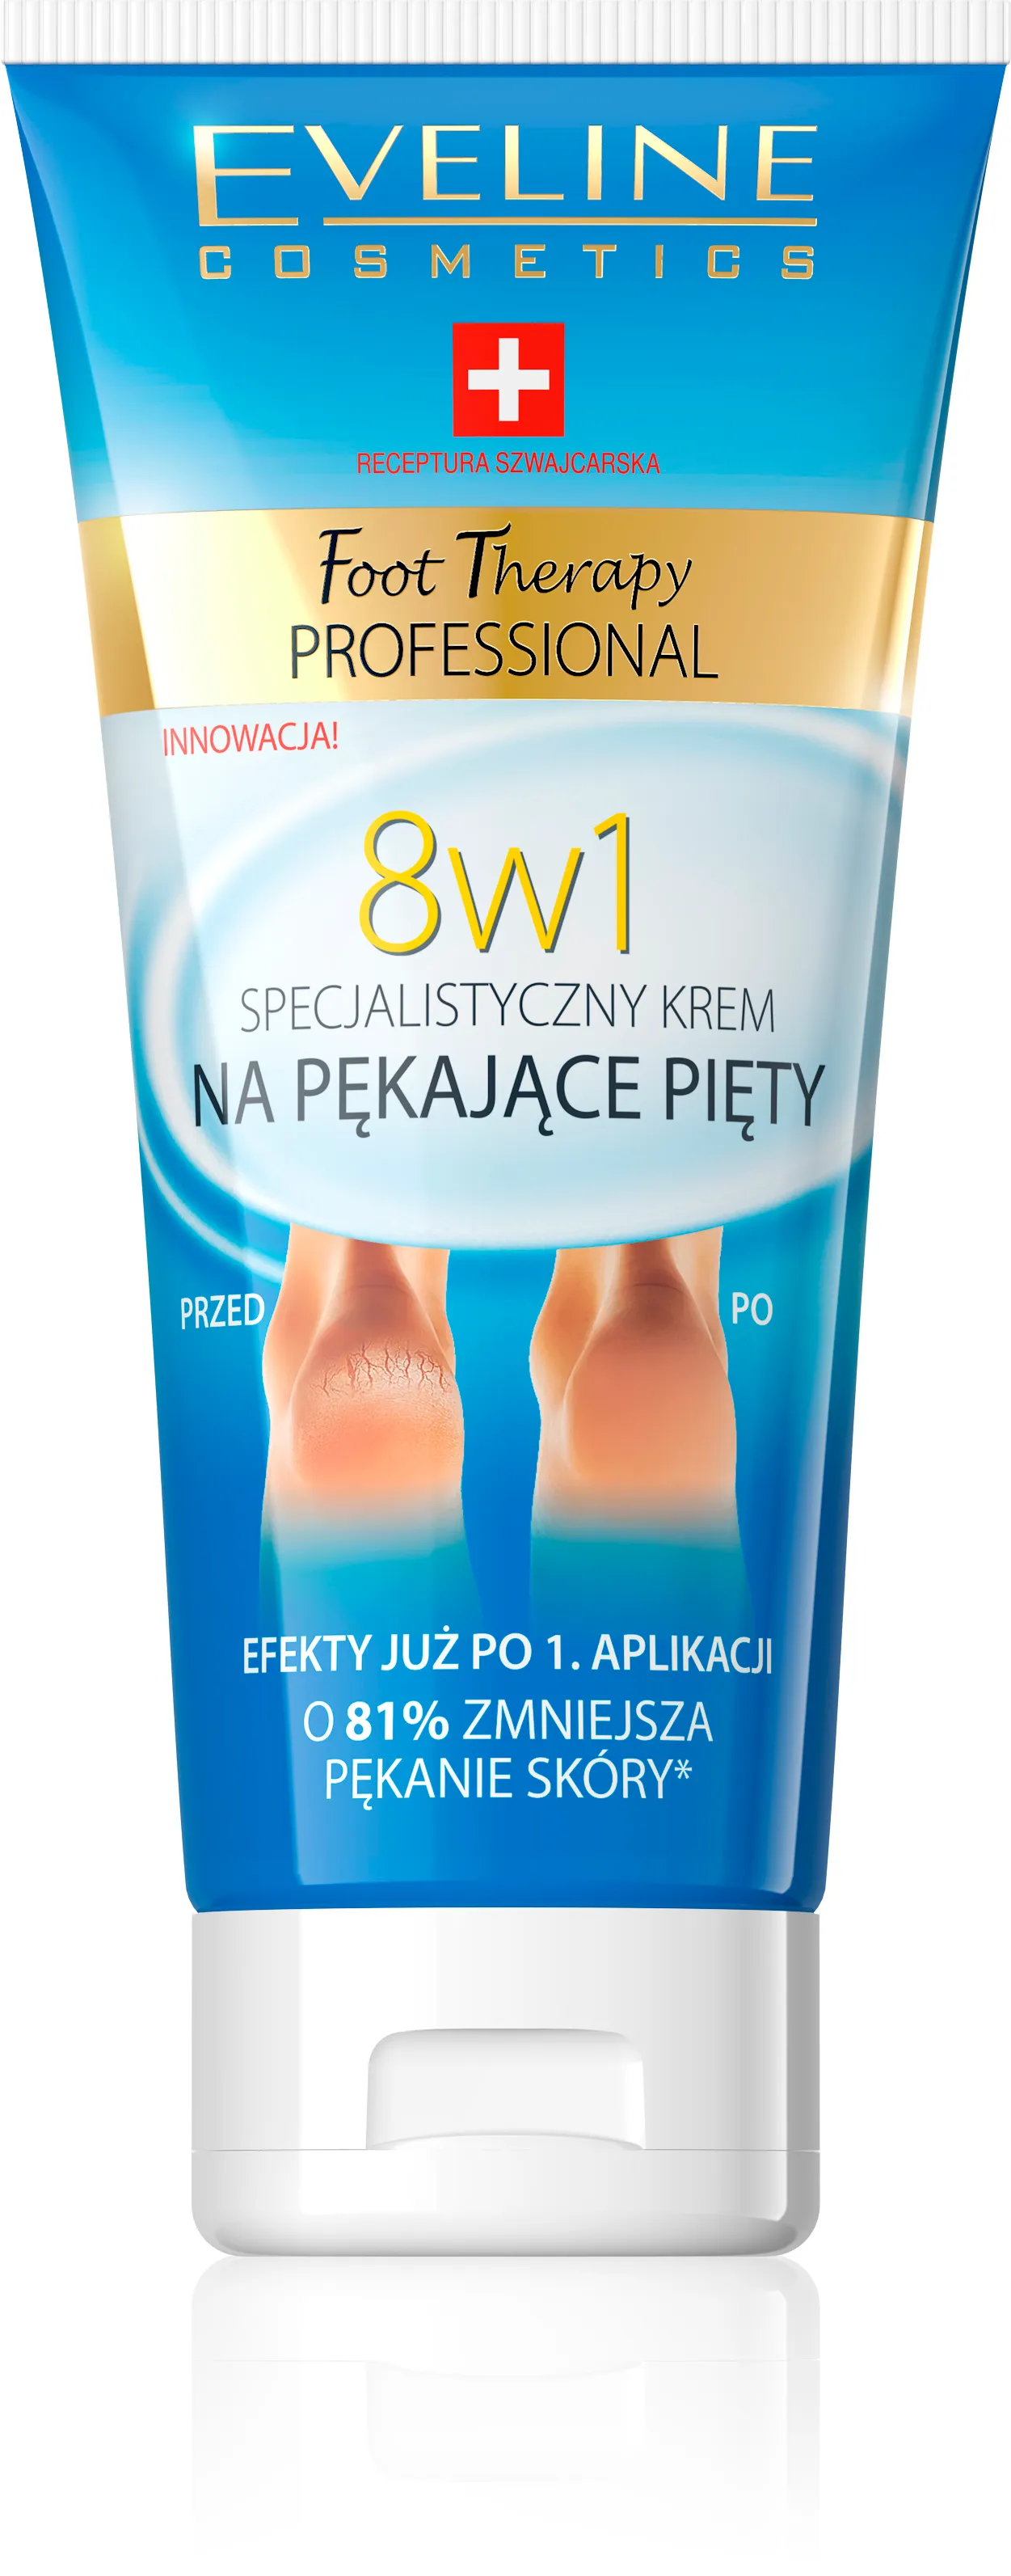 Eveline Cosmetics Foot Therapy Professional, specjalistyczny krem na pękające pięty 8w1, 100 ml